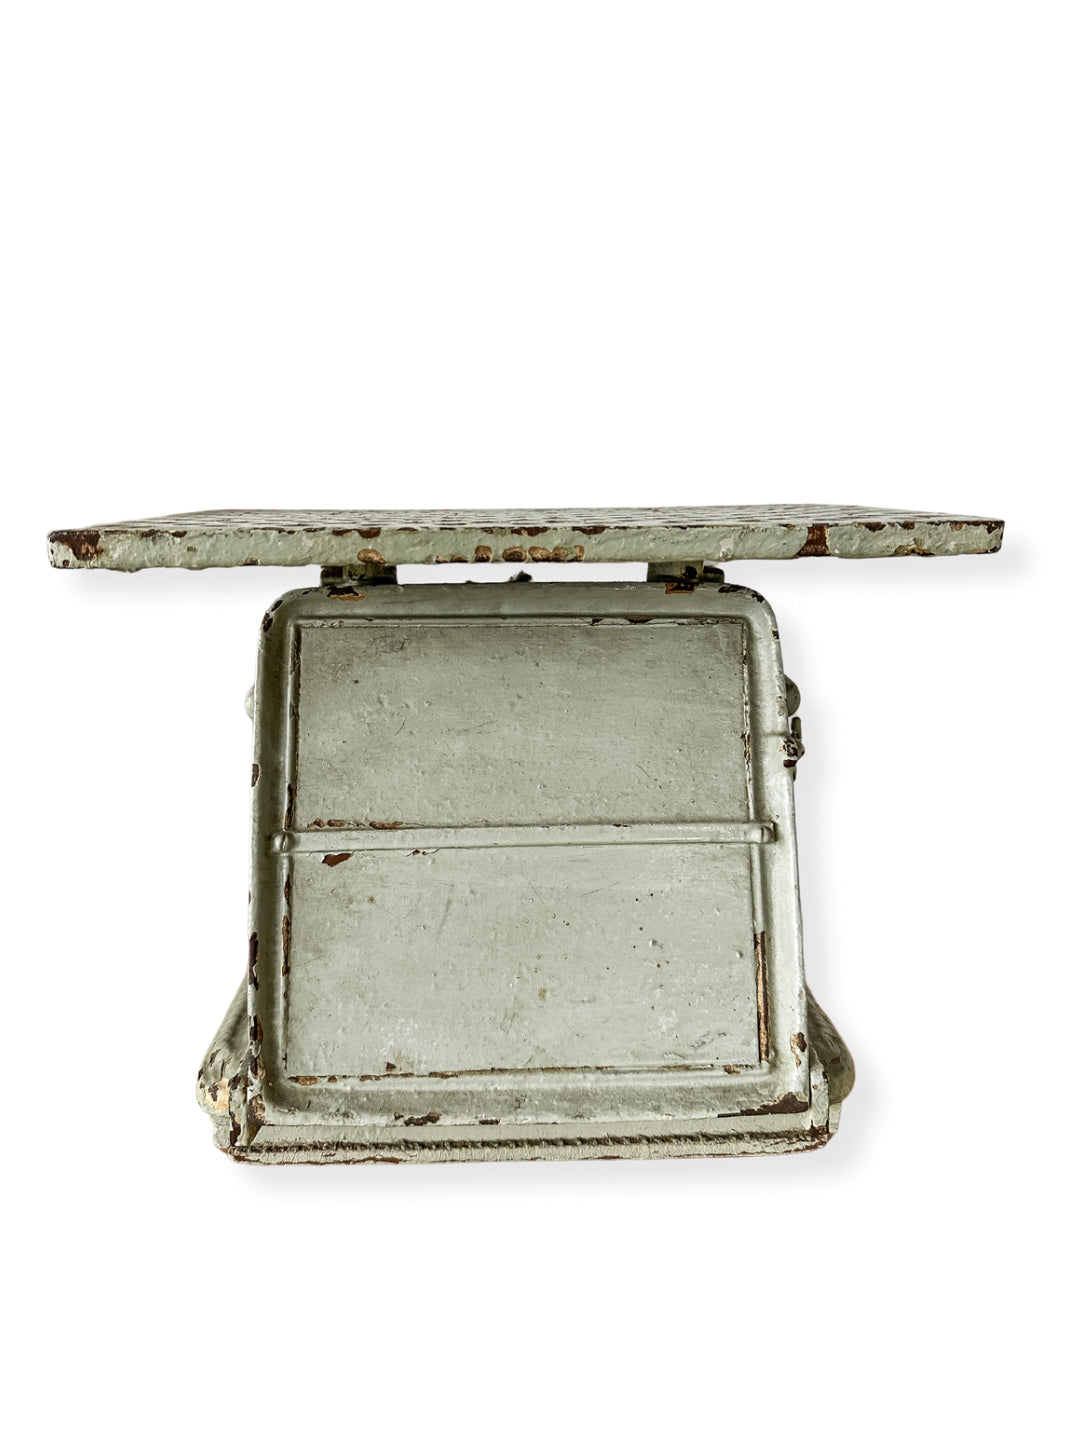 Antike Jaraso Spiegelwaage /Personenwaage aus Gusseisen mintgrün um 1920